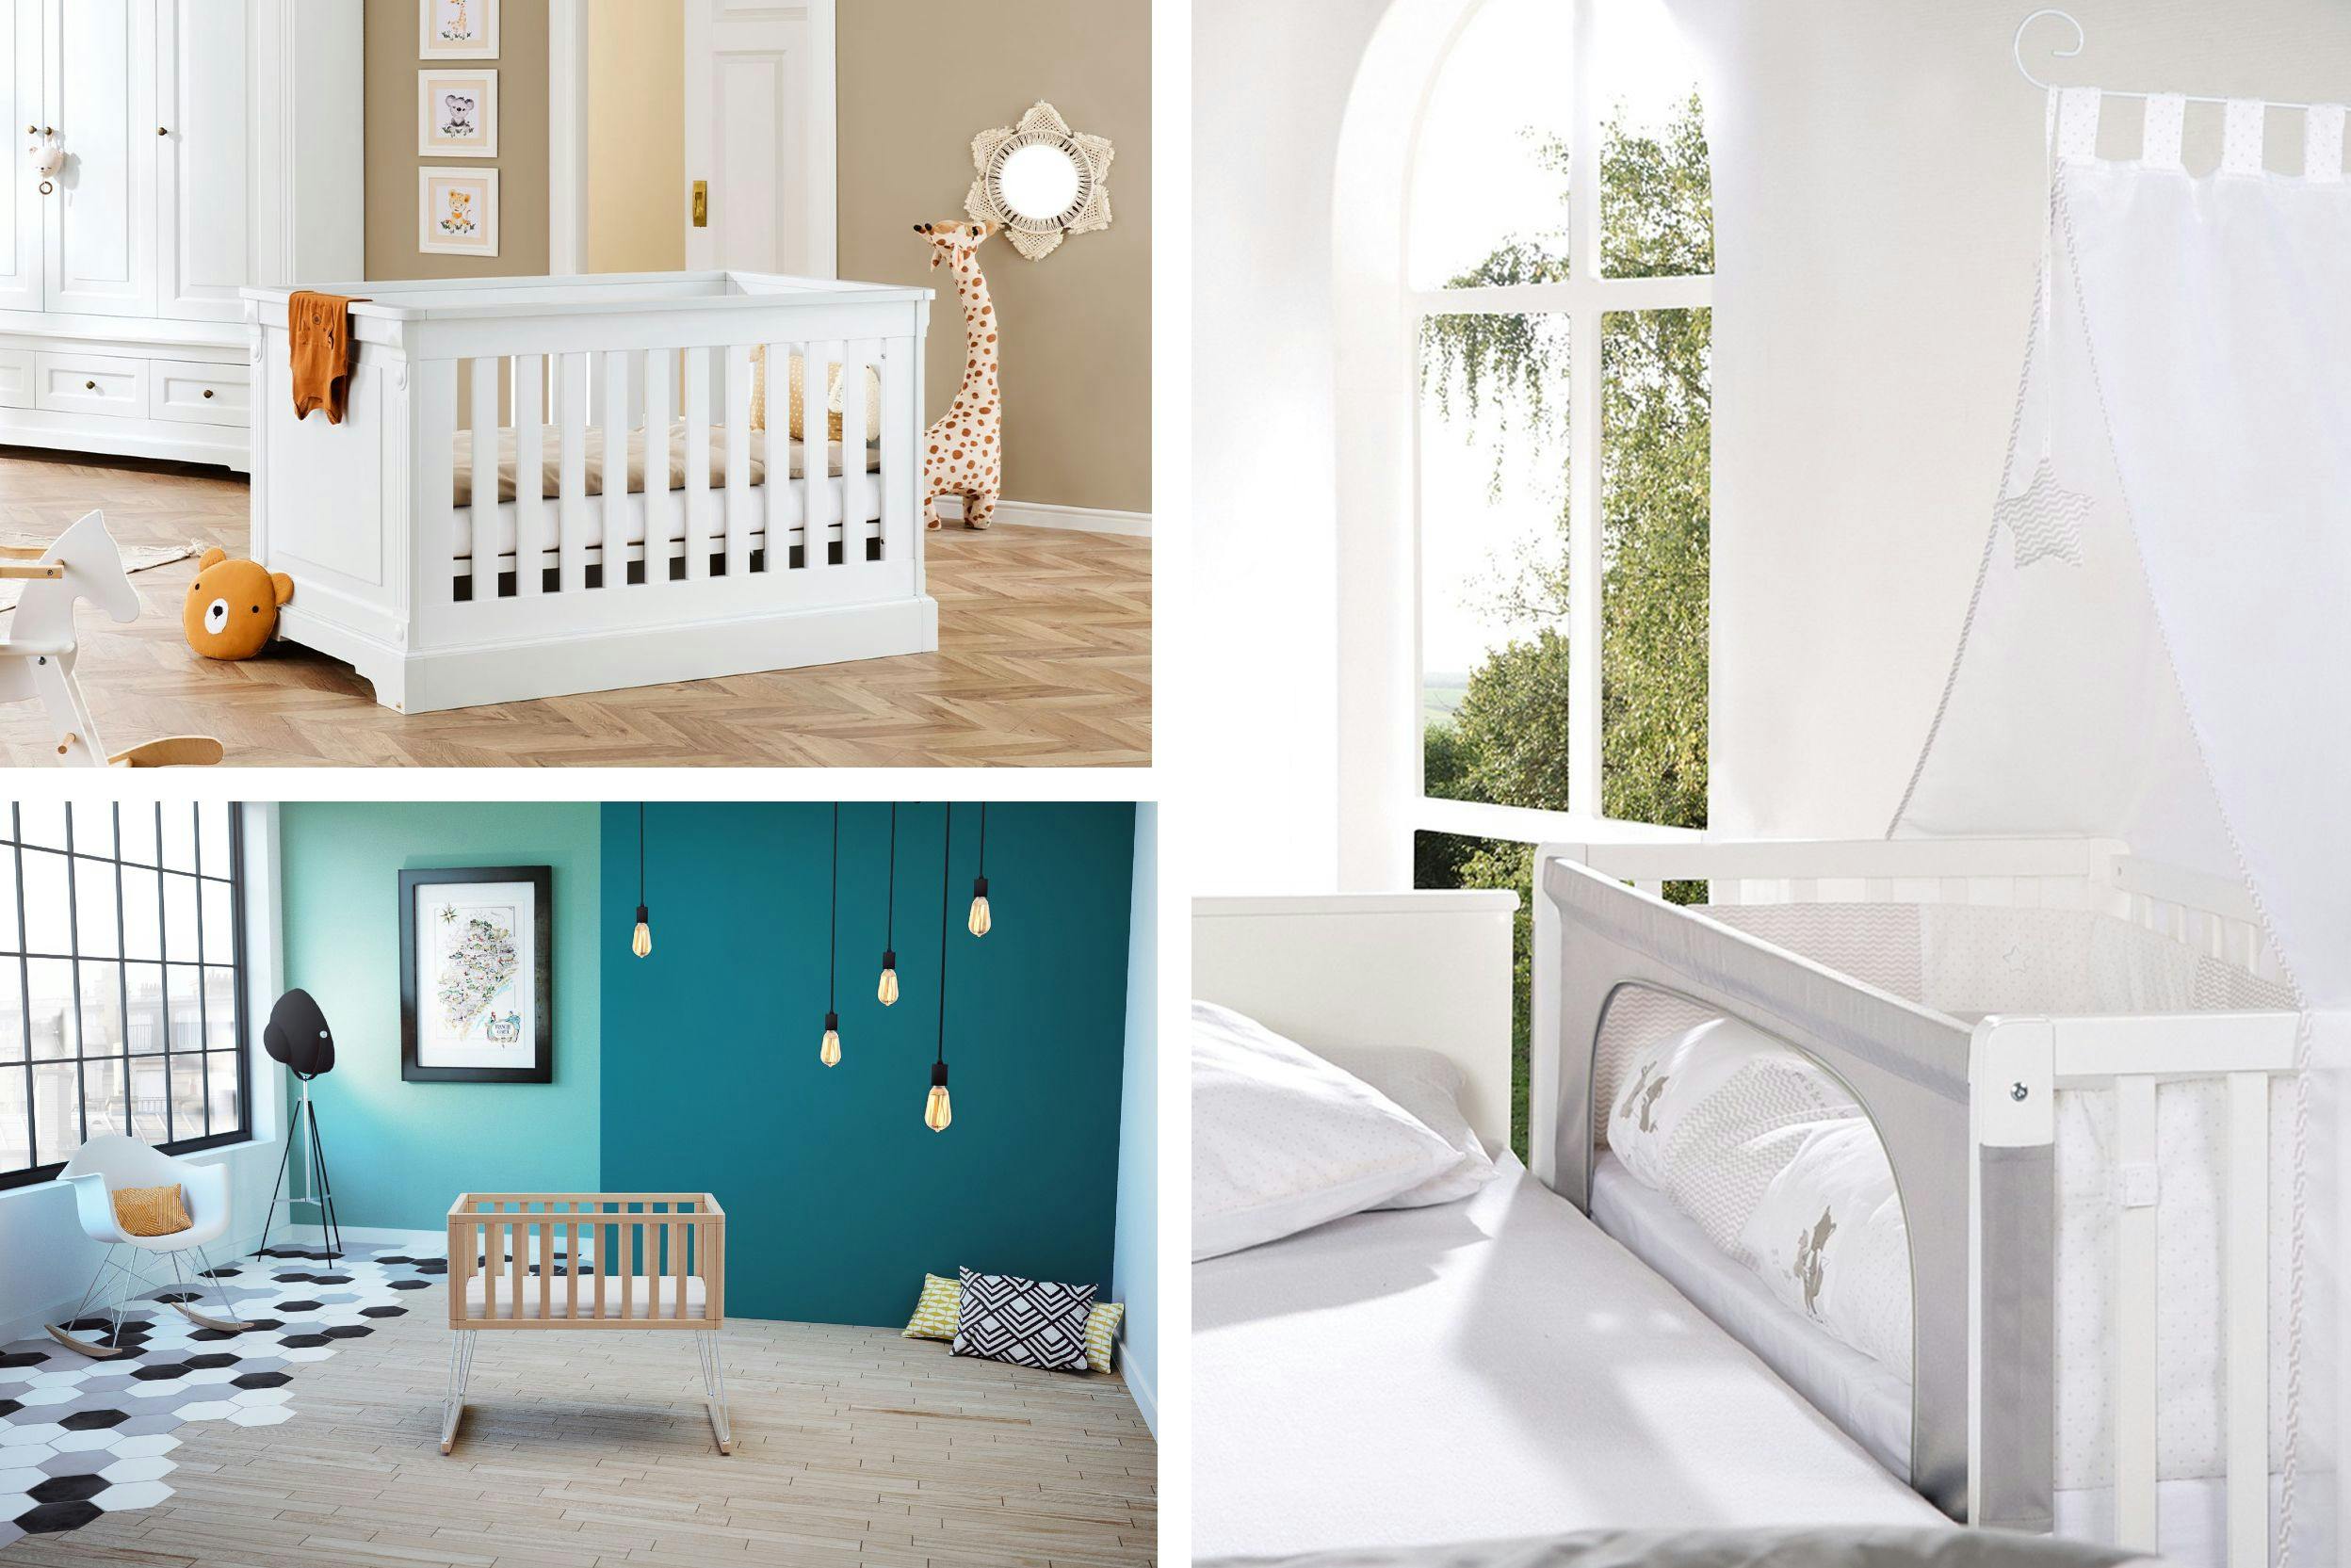 Trois photos de lits de bébé : un lit à barreaux blanc en bois massif dans une chambre aux tons nus, un berceau en bois massif clair, dans une chambre aux tons verts canard, et un cododo blanc près d'un lit blanc avec drap blanc et grande fenêtre 